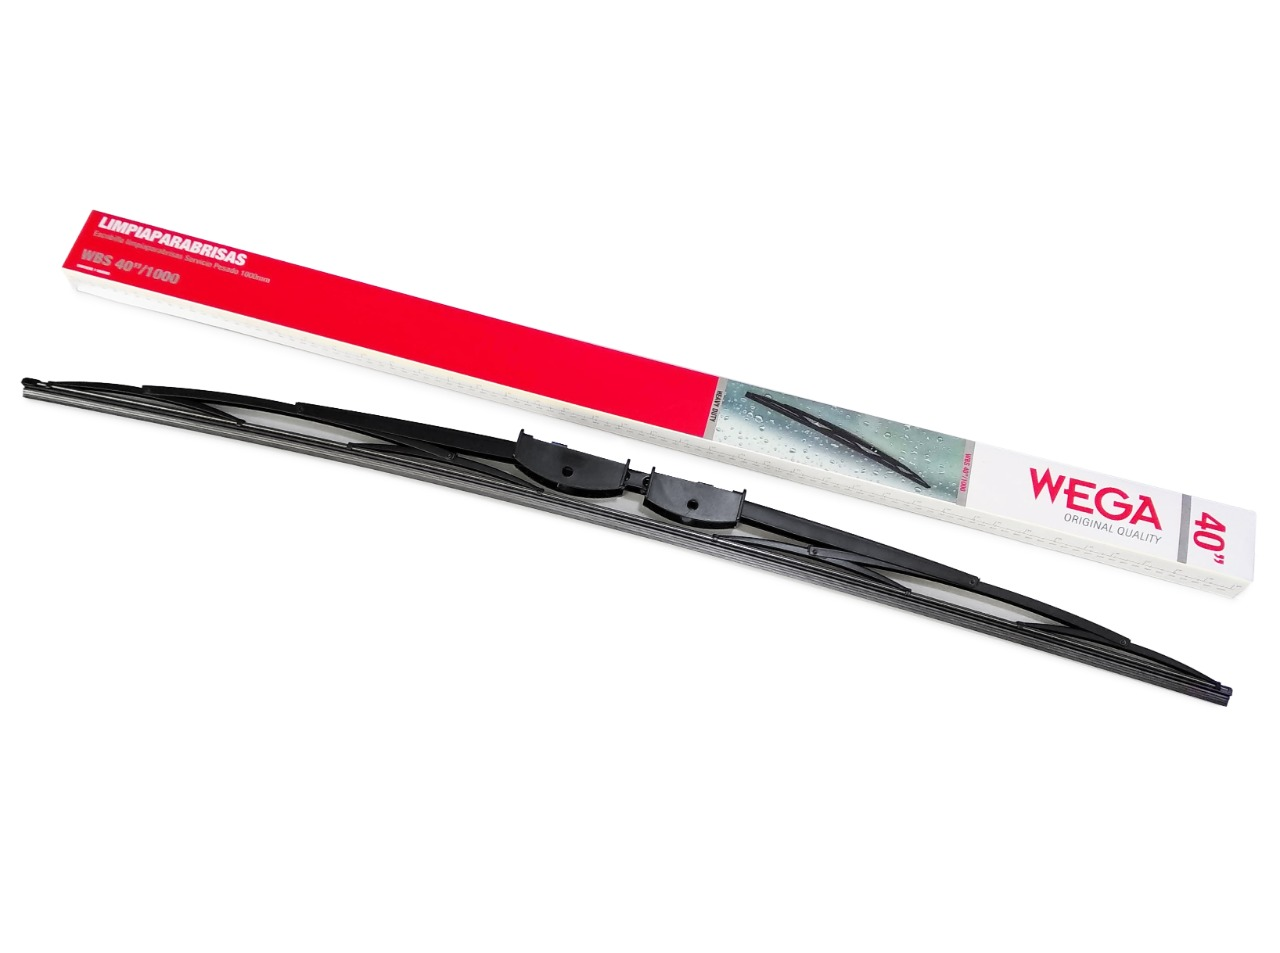 Wega anuncia nuevos modelos de escobillas